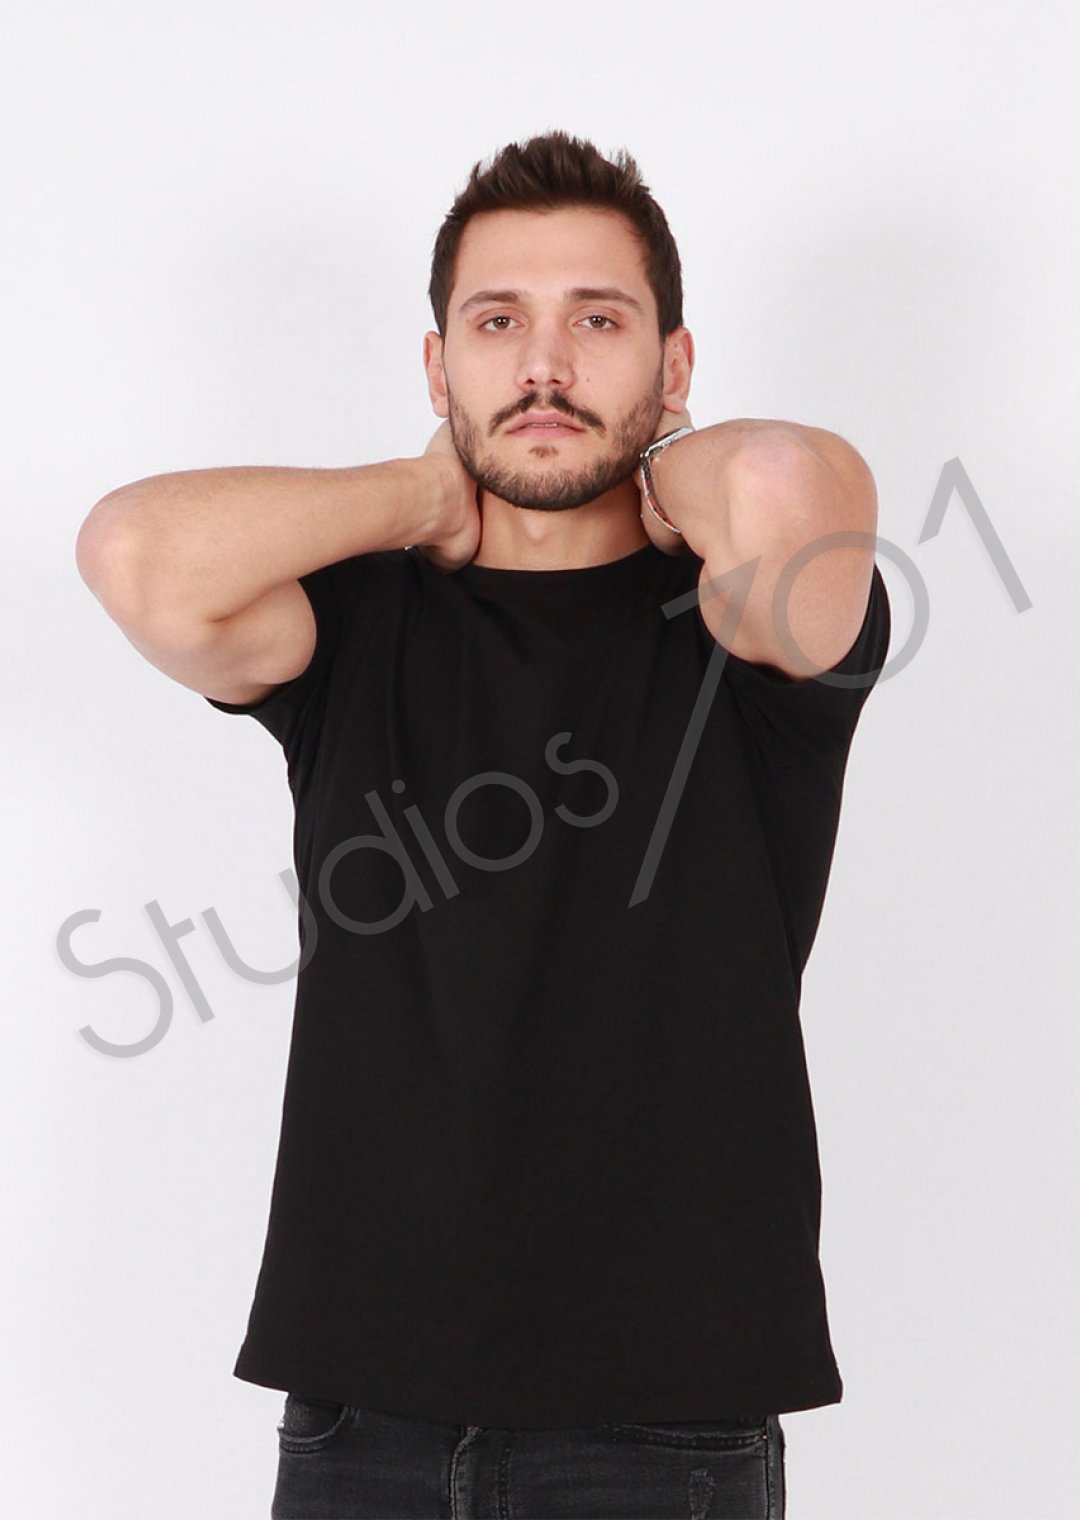 Studios701 | Modeller | Thumb Sinan | 